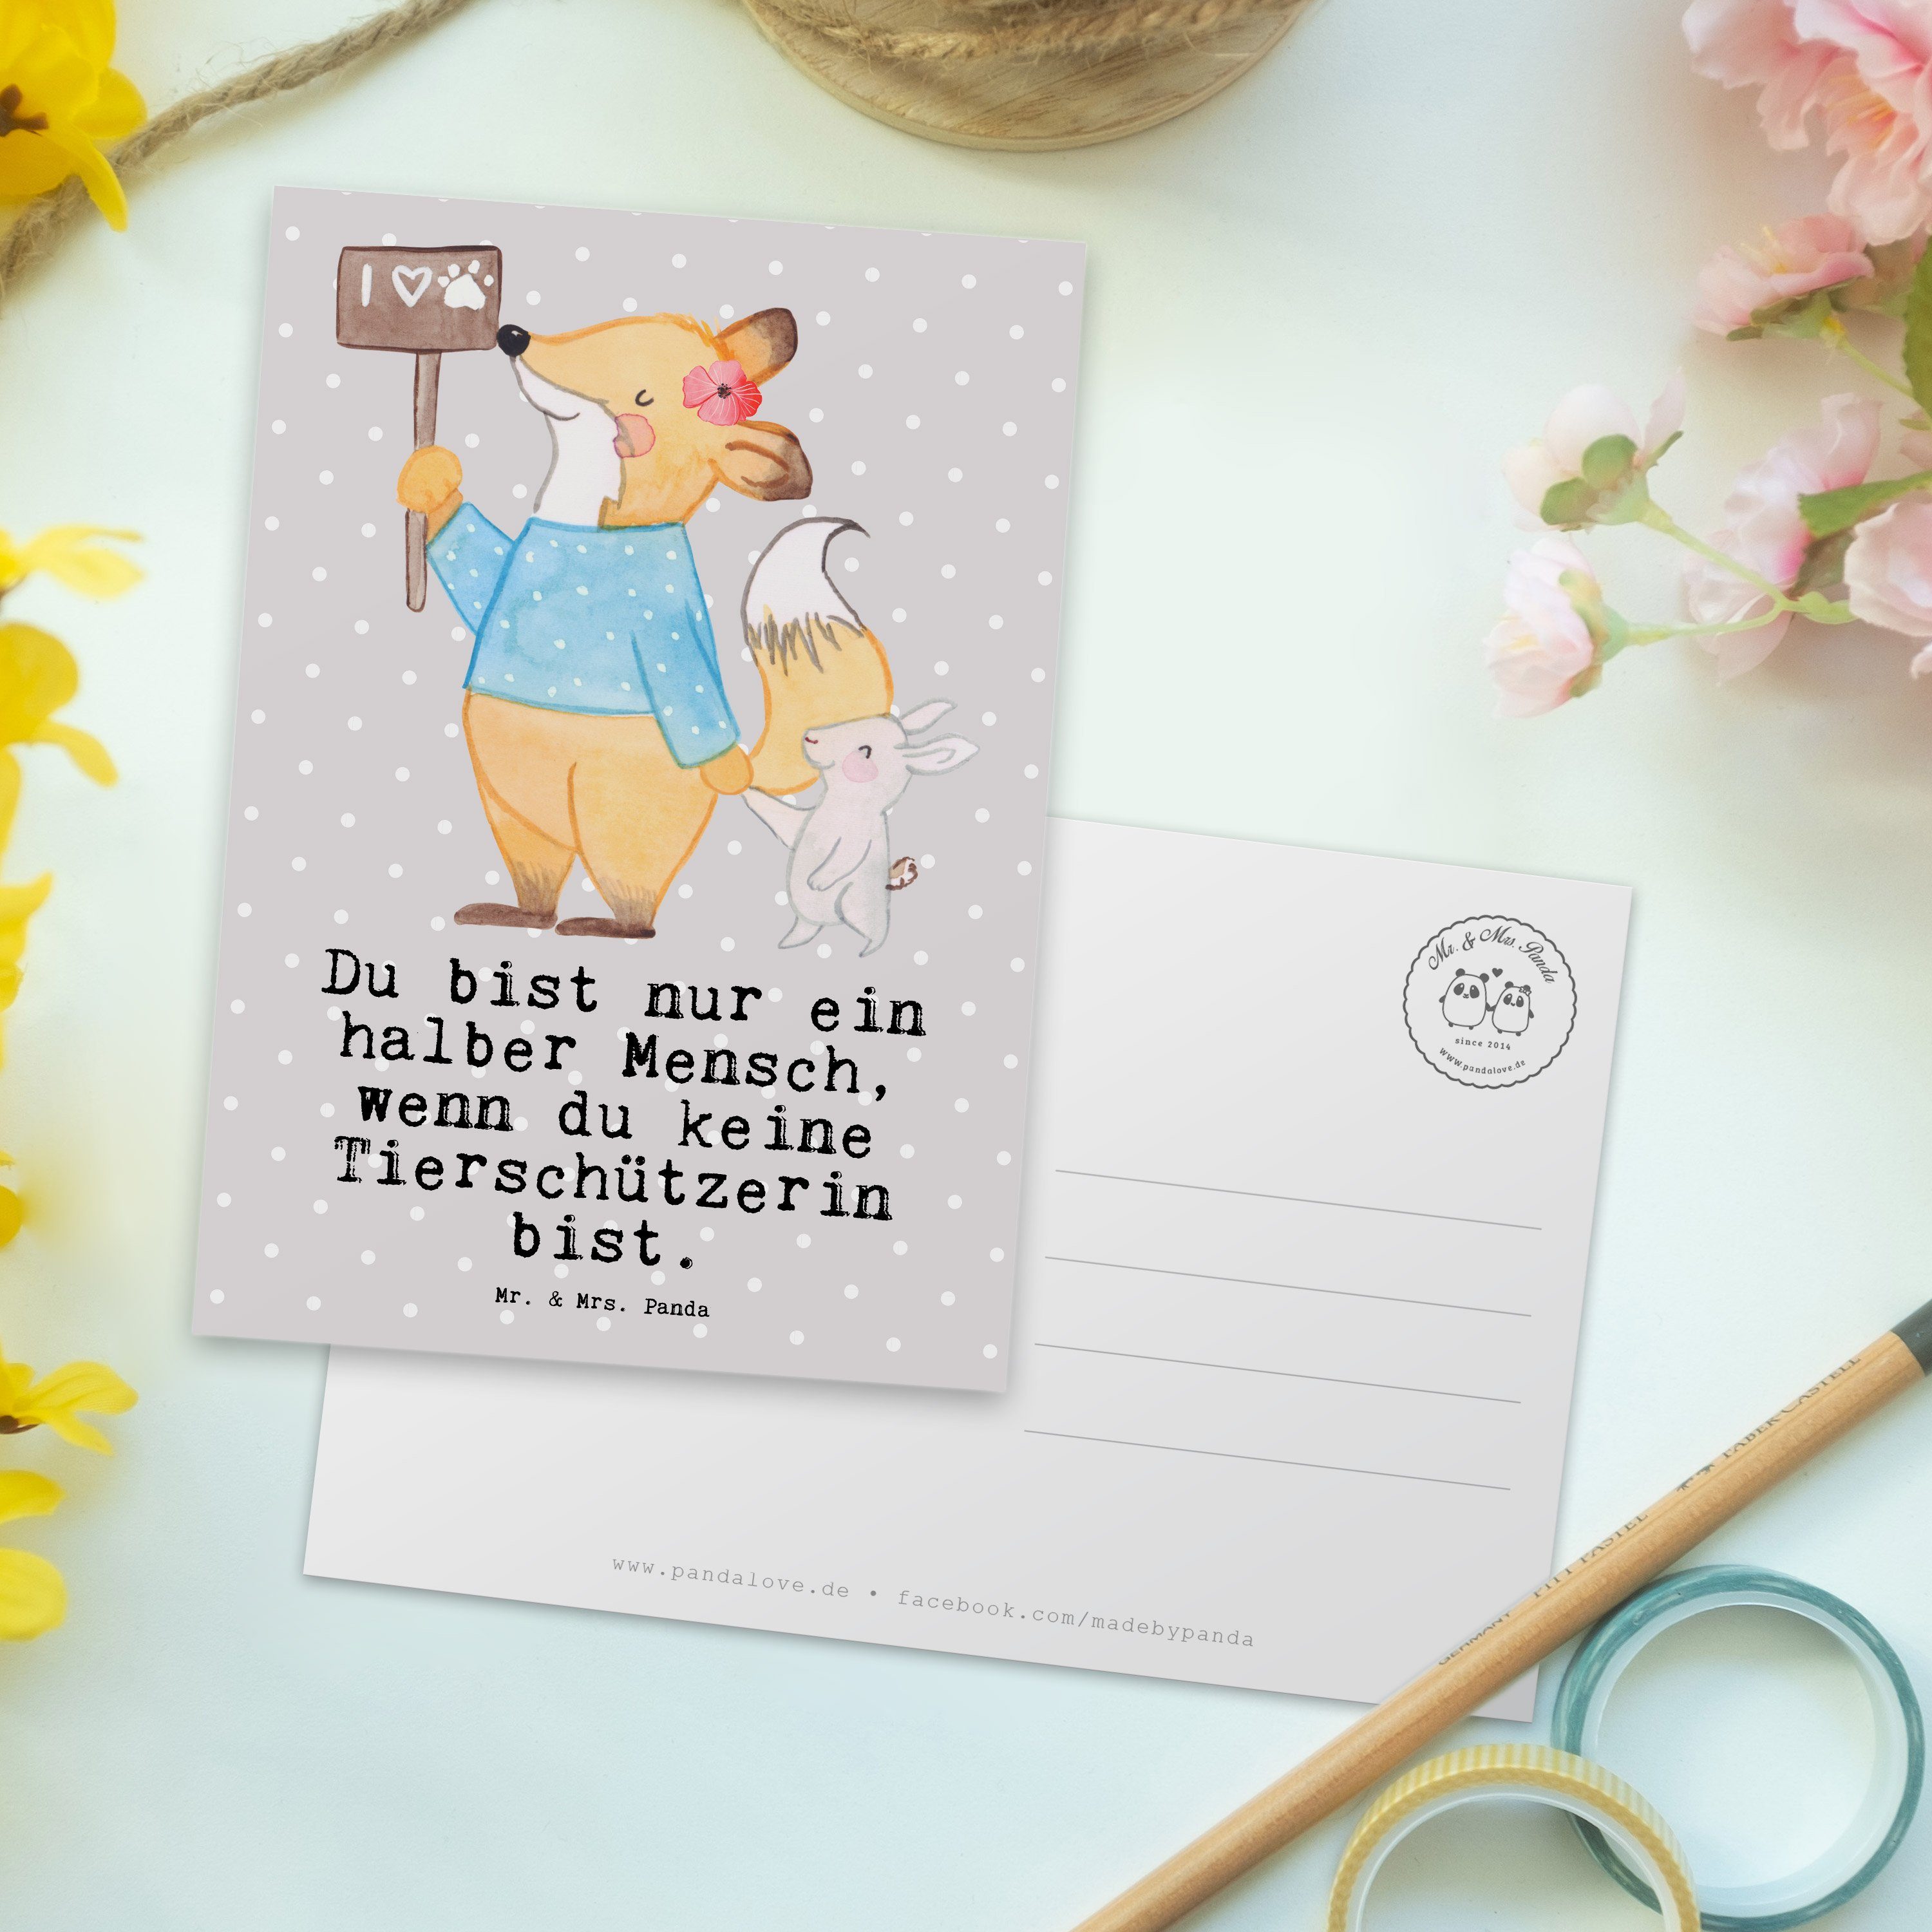 Mr. & Mrs. - - mit Postkarte Panda Tierschützerin Geschenk, Beruf Pastell Dankeschön, Herz Grau